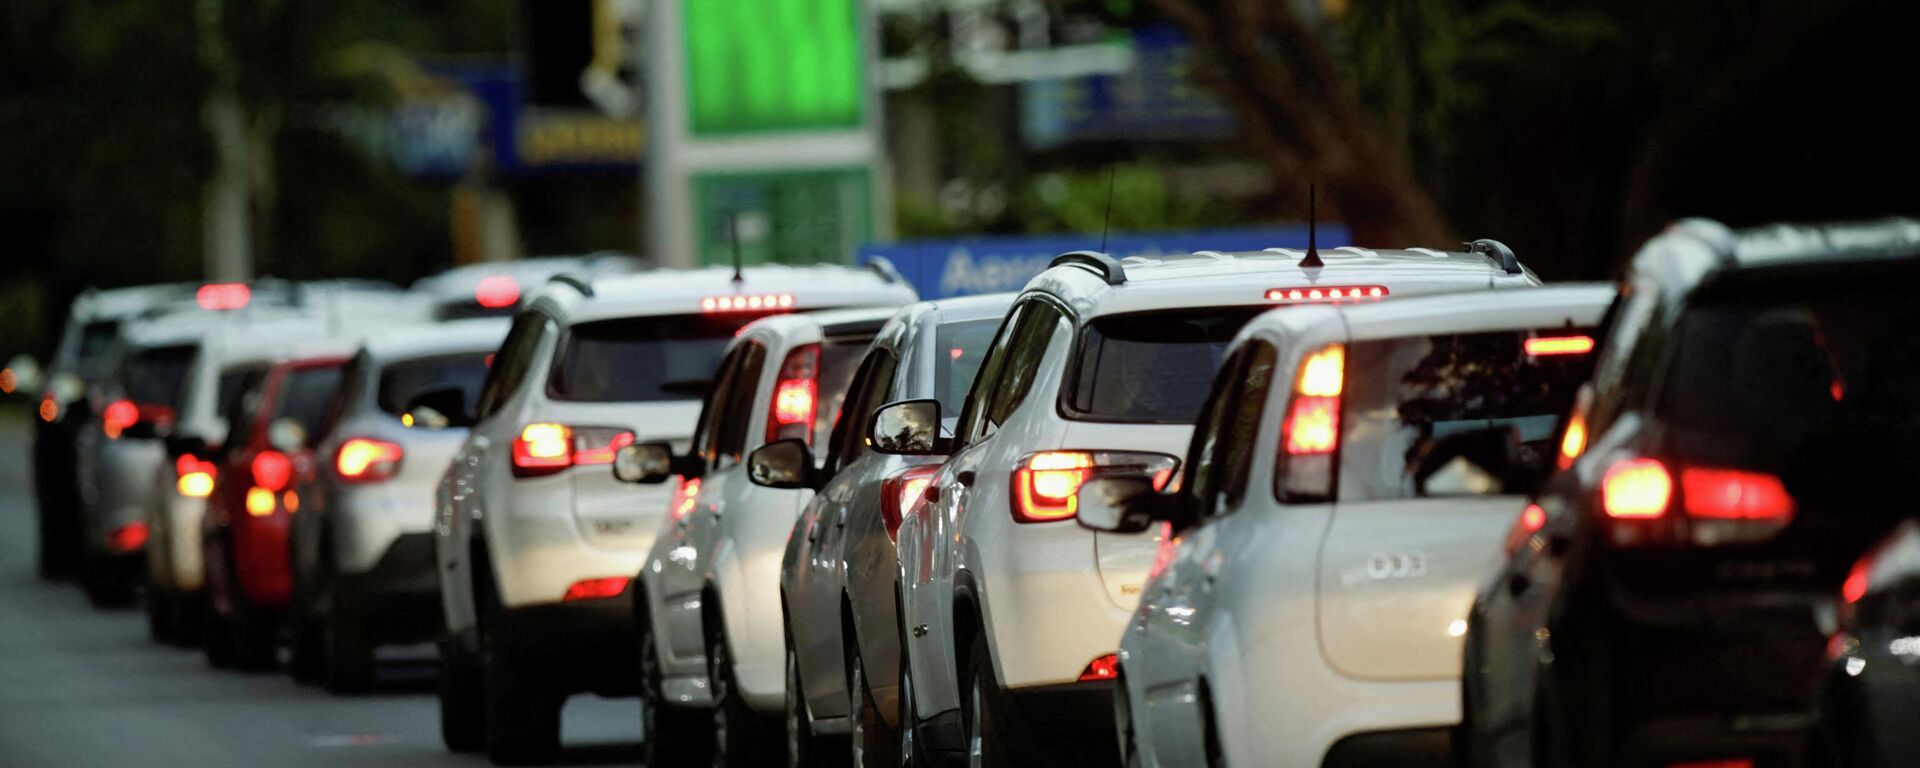 Motoristas fazem fila do lado de fora de um posto de gasolina para abastecer seus carros, em Brasília, no Brasil, em 10 de março de 2022. - Sputnik Brasil, 1920, 08.04.2022